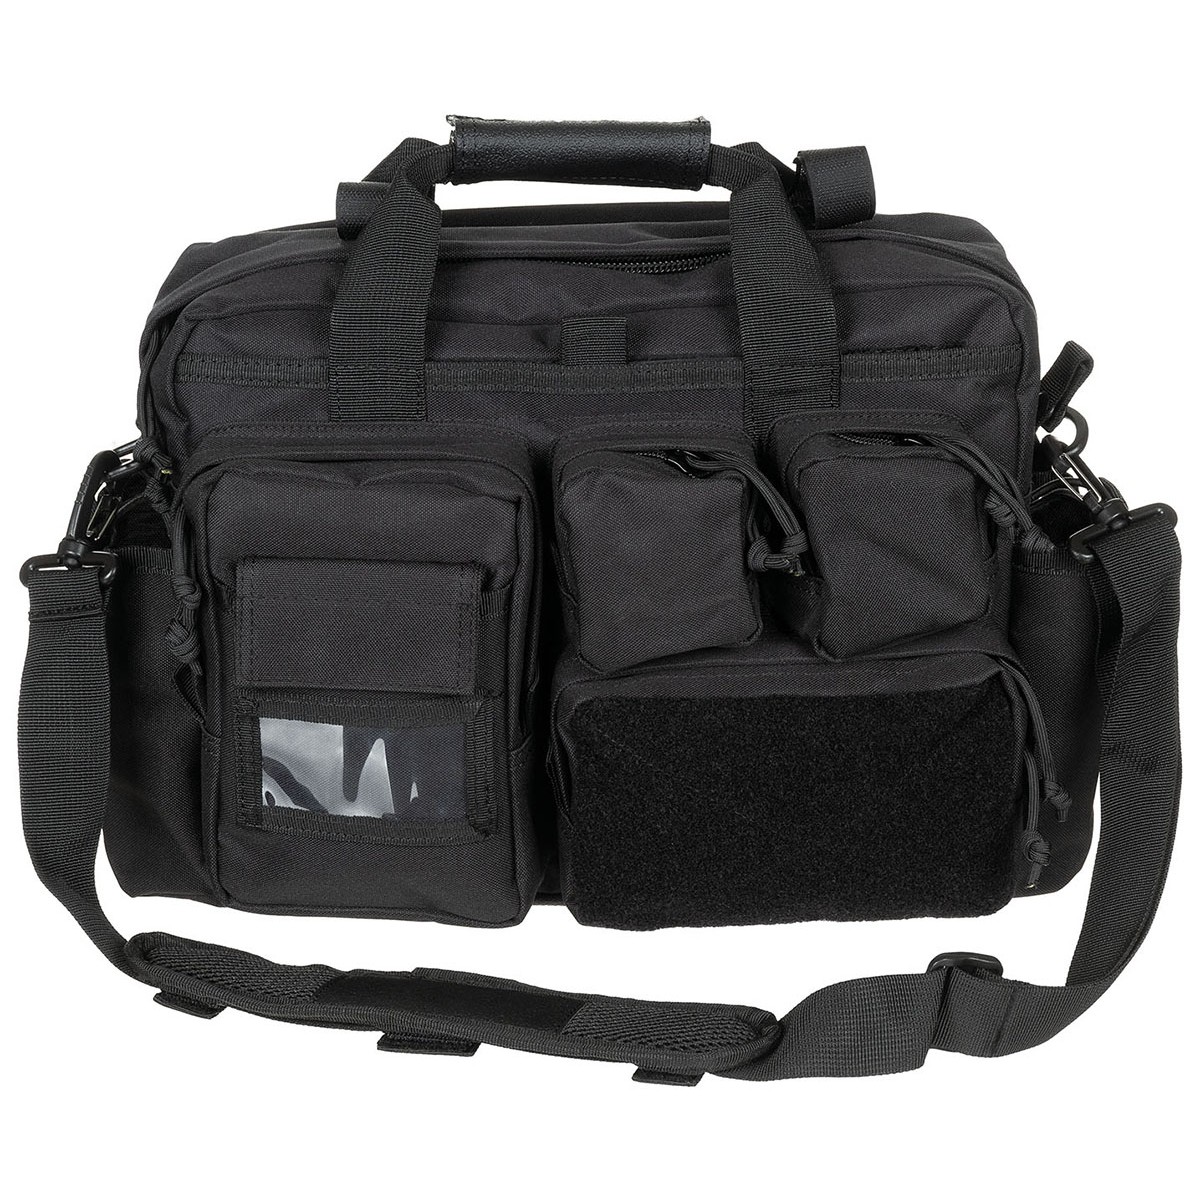 MFH® Professional Operation Bag Shooting Backpack Range Pack w/ Shoulder Strap